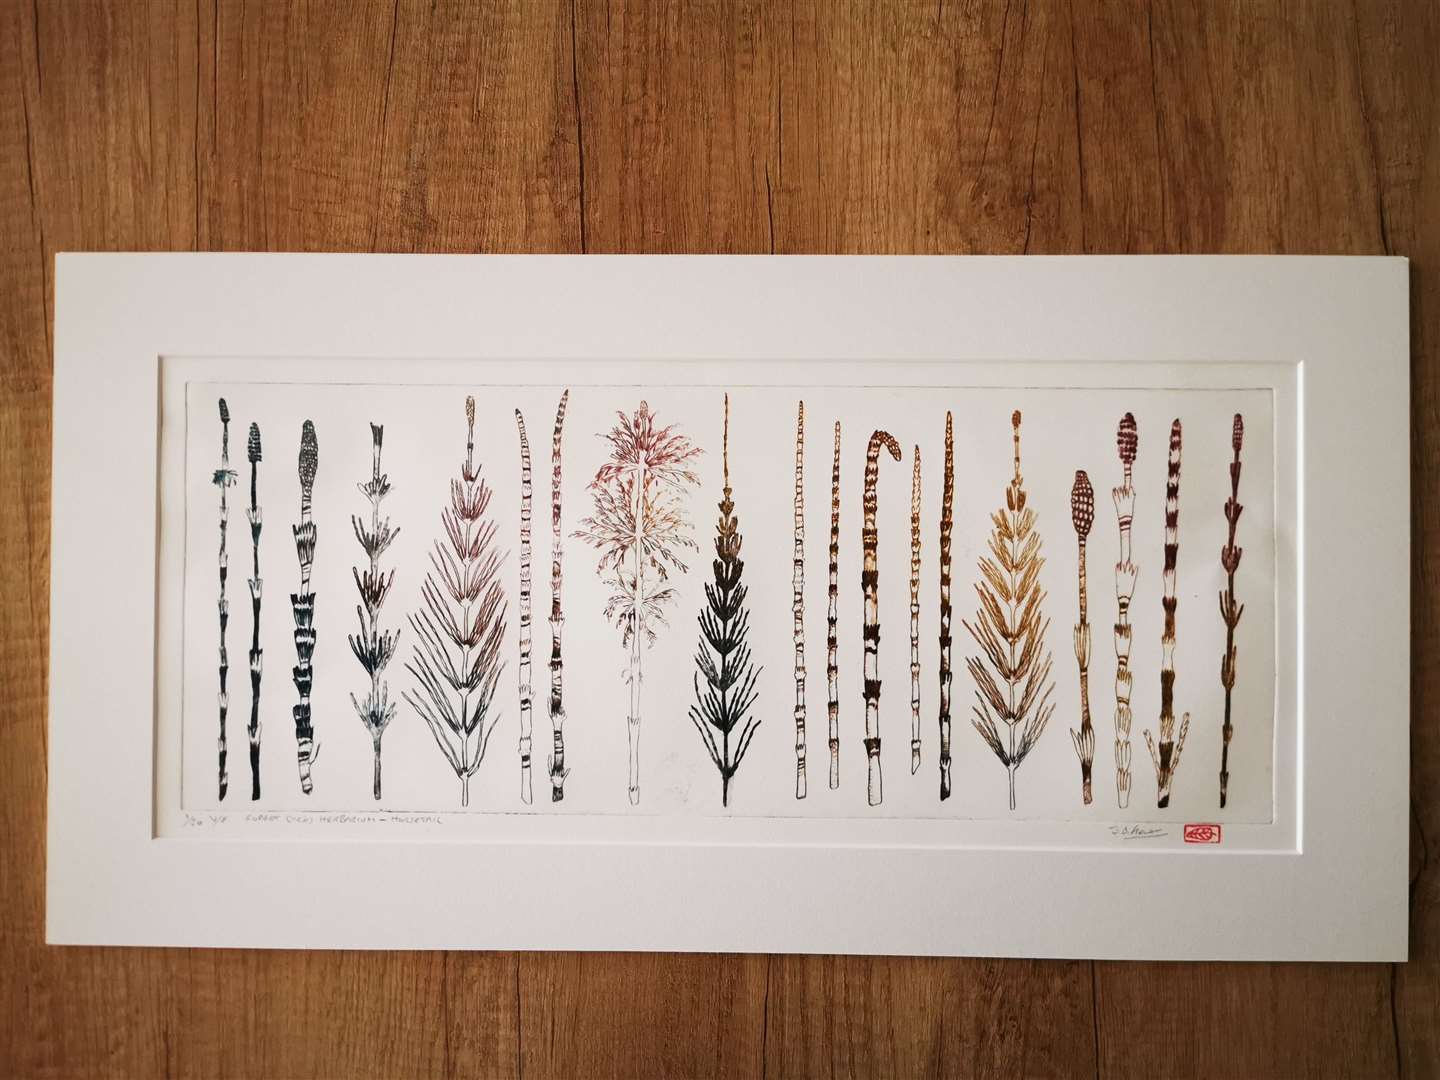 One of the artworks on show – Herbarium print by Joanne B Kaar.